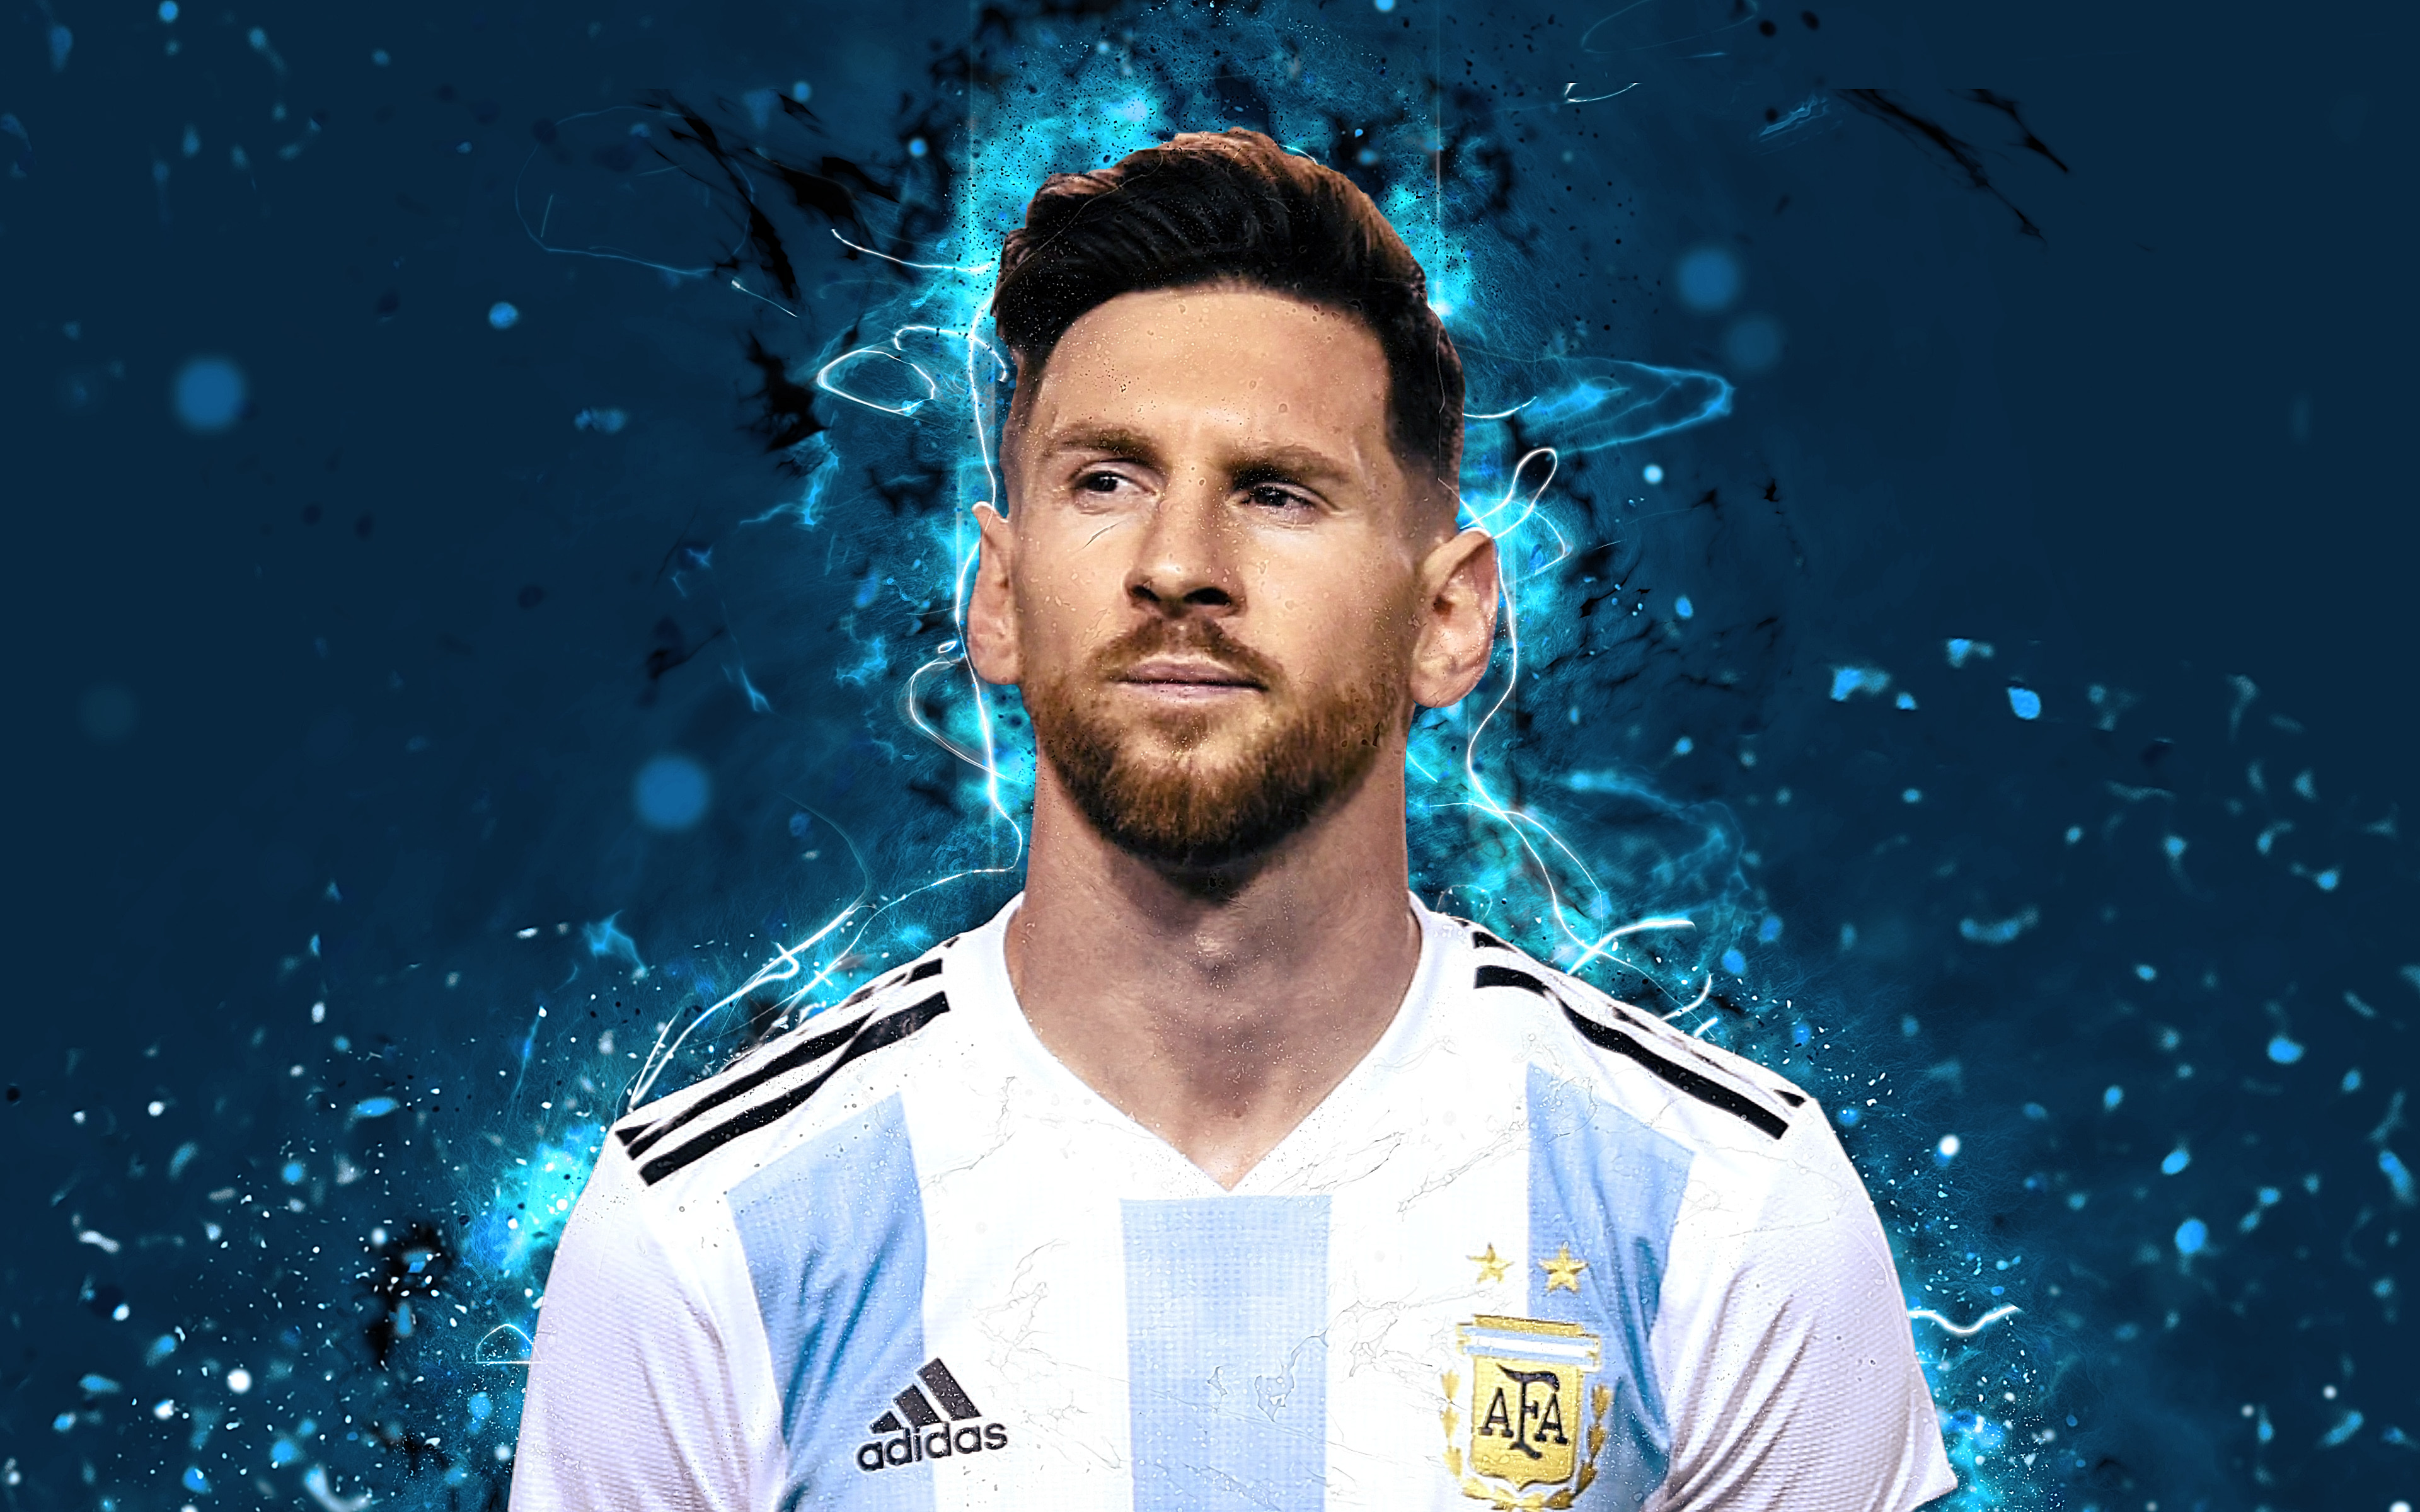 Hãy xem ảnh nền Messi đội bóng thiếu niên xuất sắc này để chiêm ngưỡng vẻ đẹp của ngôi sao bóng đá Argentina này.